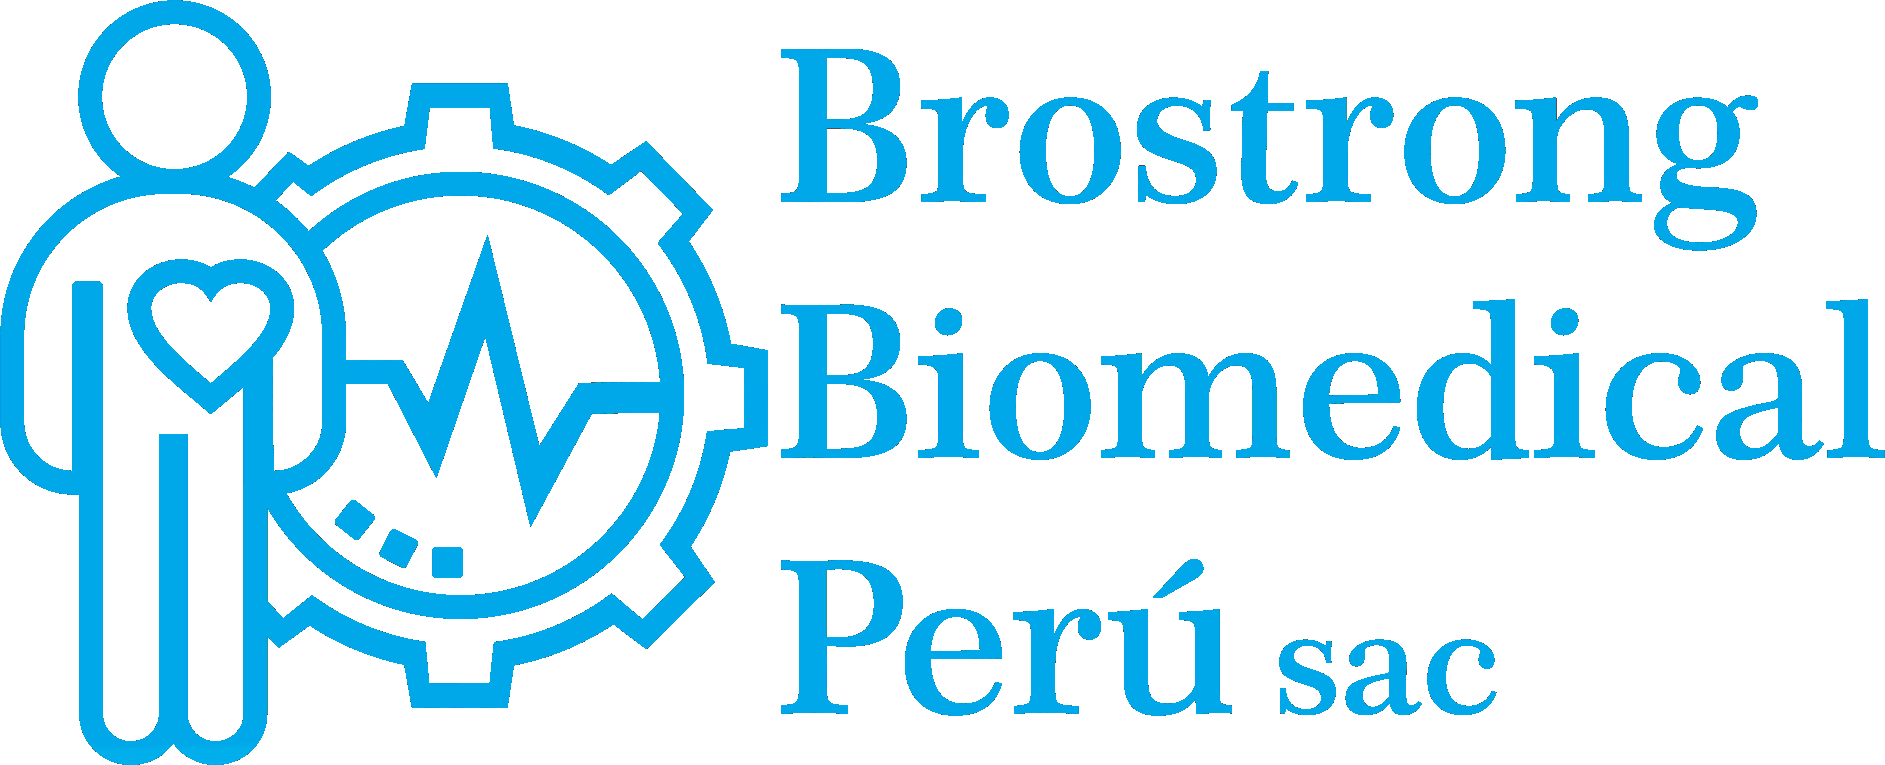 Brostrong Medical Perú